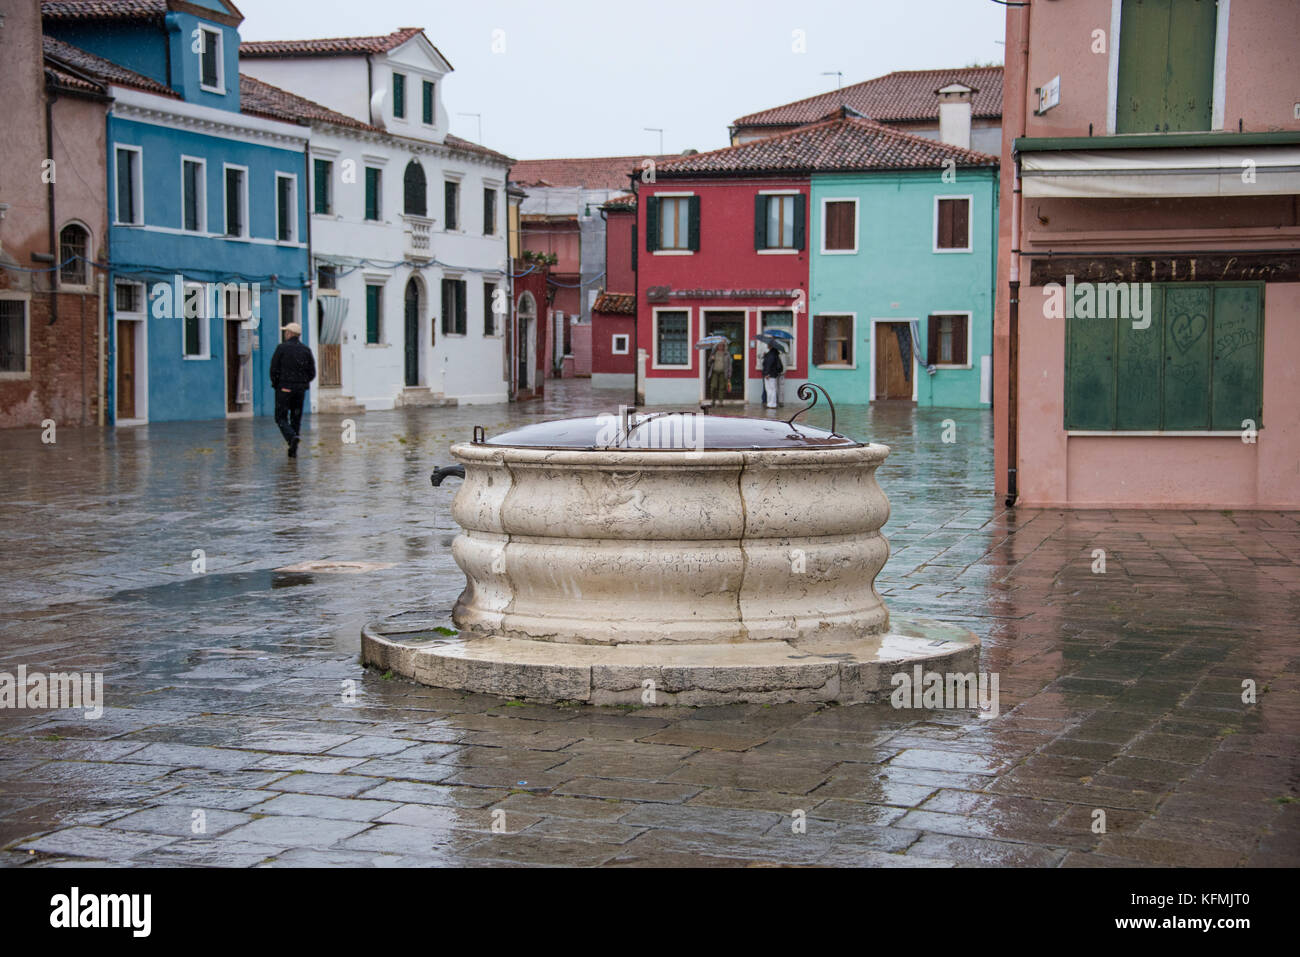 Main square, Piazza Baldassare Galuppi, in front of the church, Burano, Venice Stock Photo